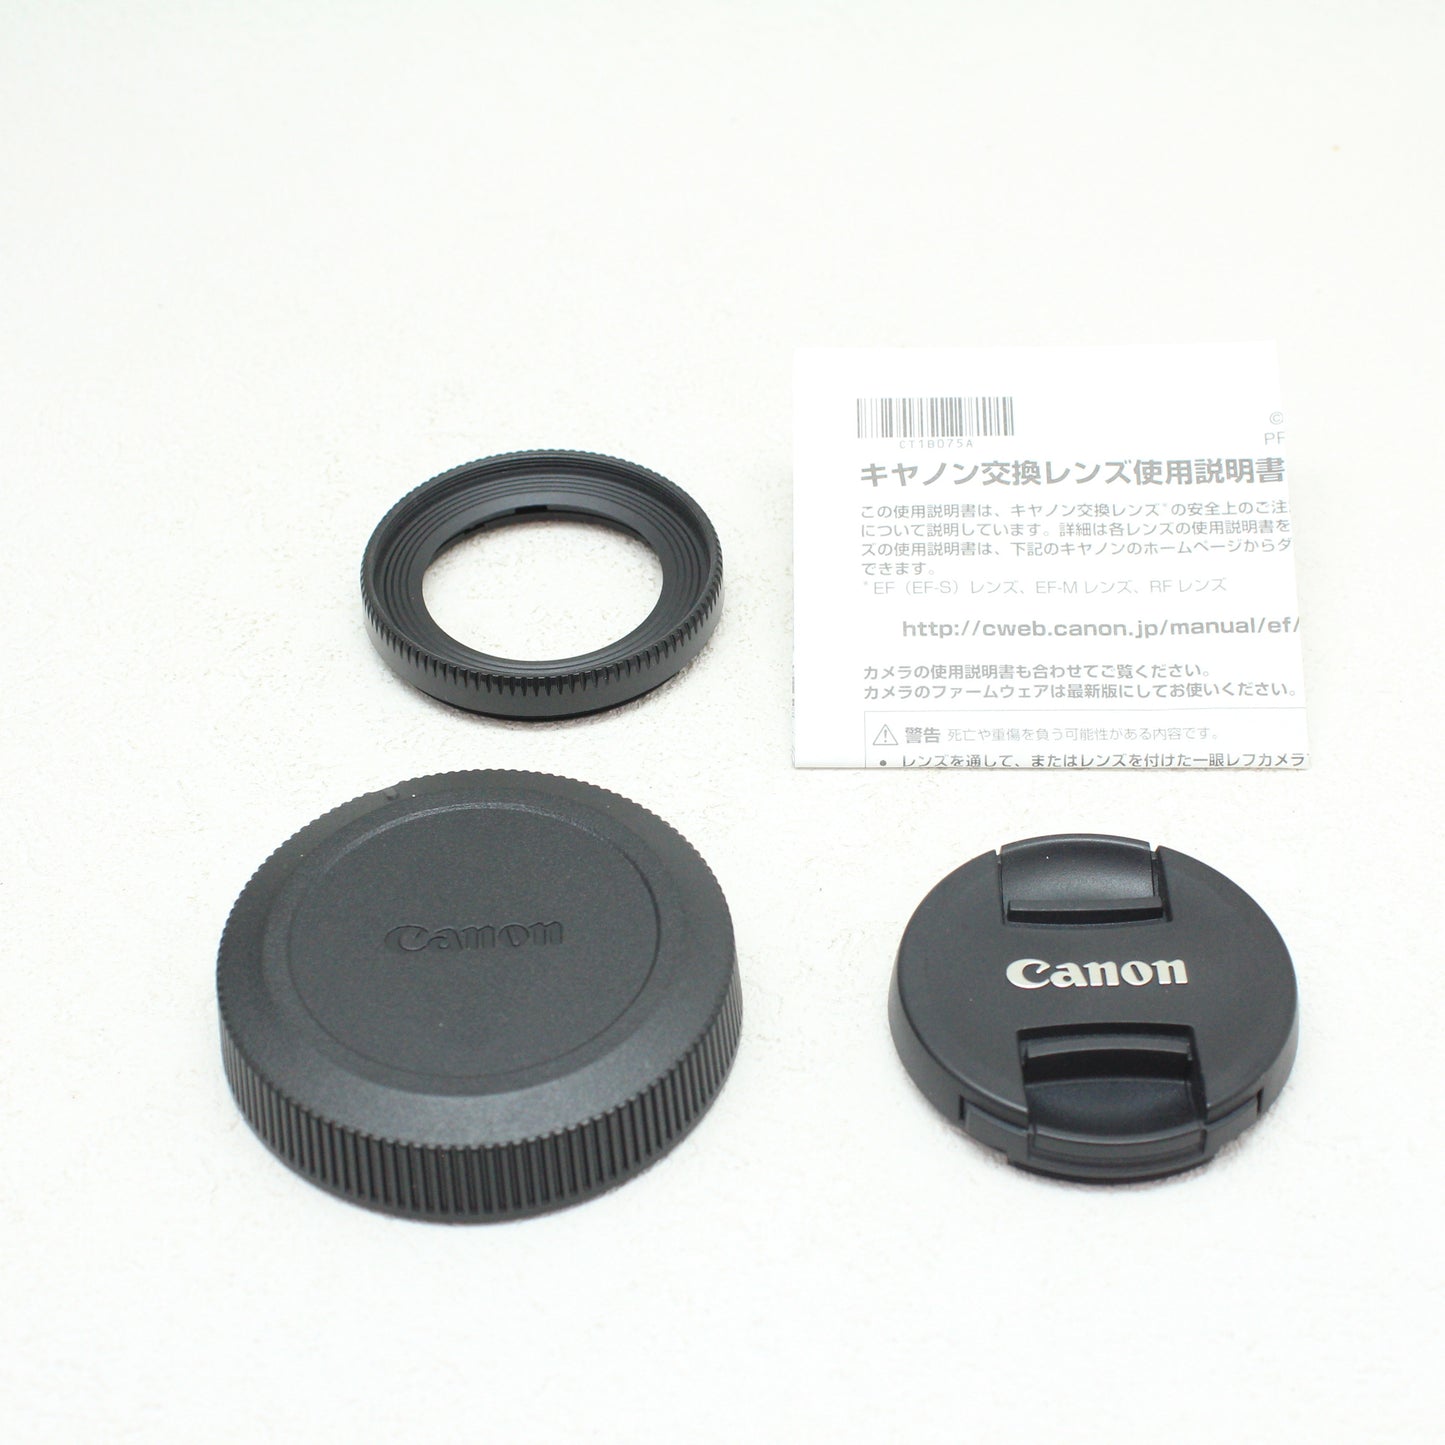 中古品 Canon RF35mm F1.8 マクロ IS STM 【1月6日(土) youtube生配信でご紹介】